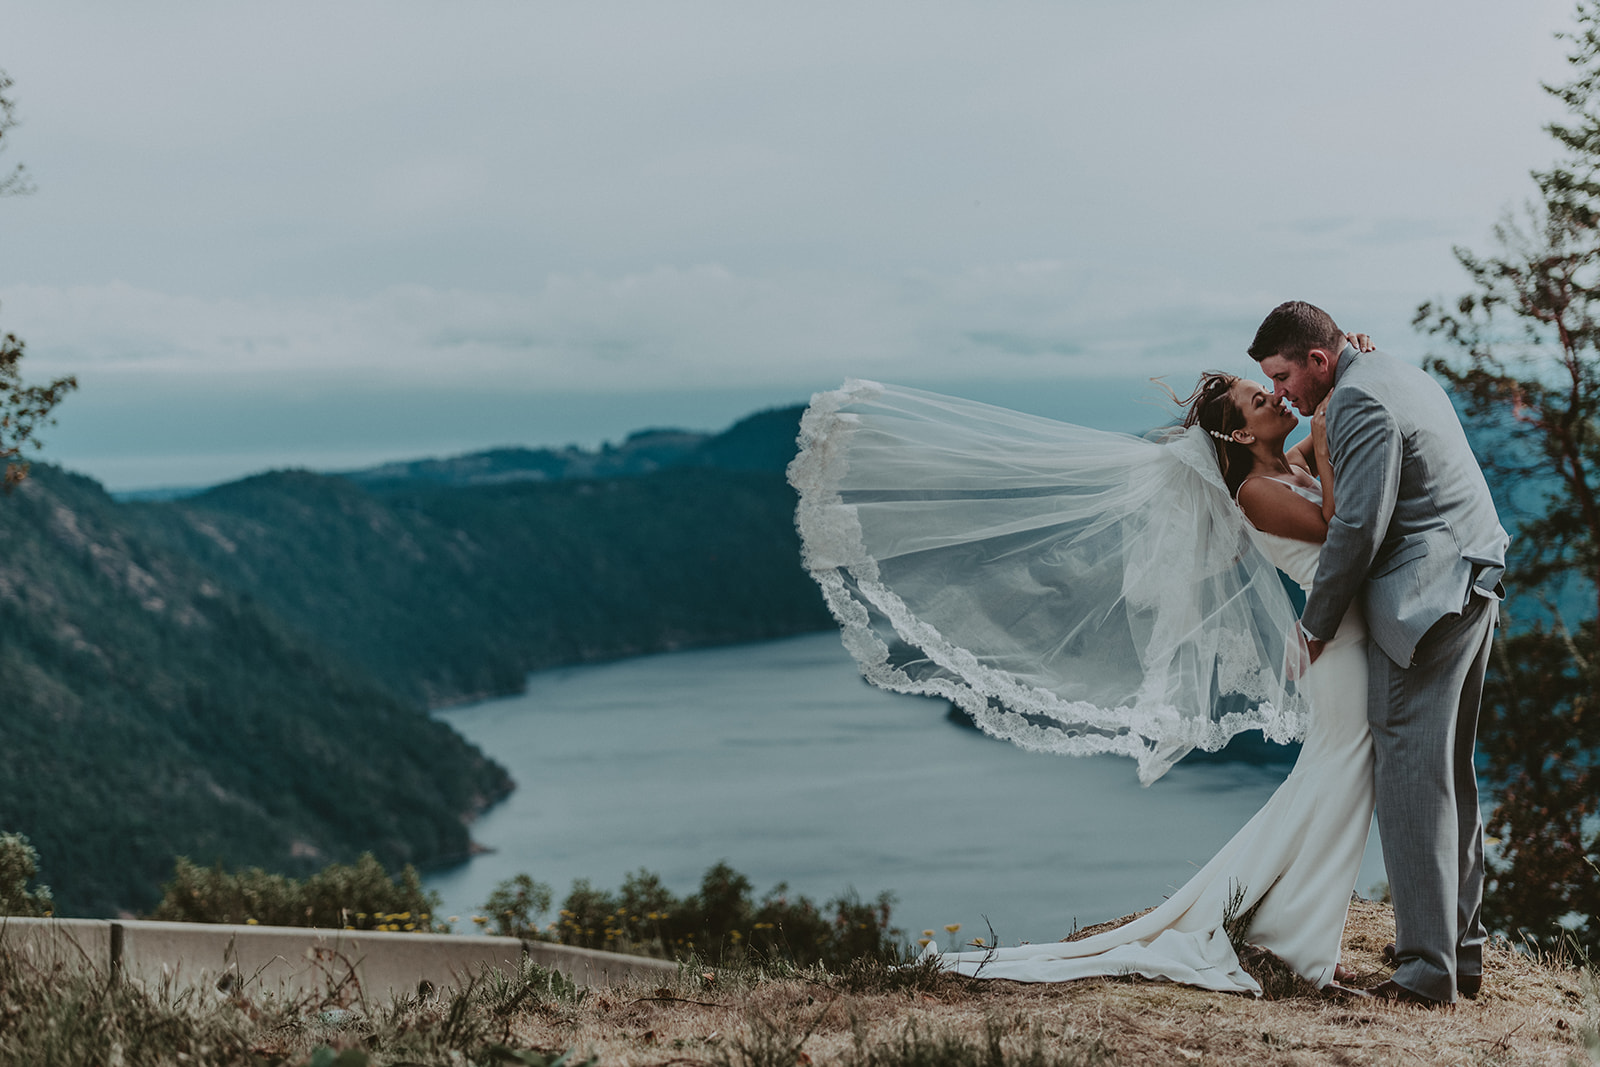 Vancouver Island wedding photography, creative wedding photography, artistic wedding photography